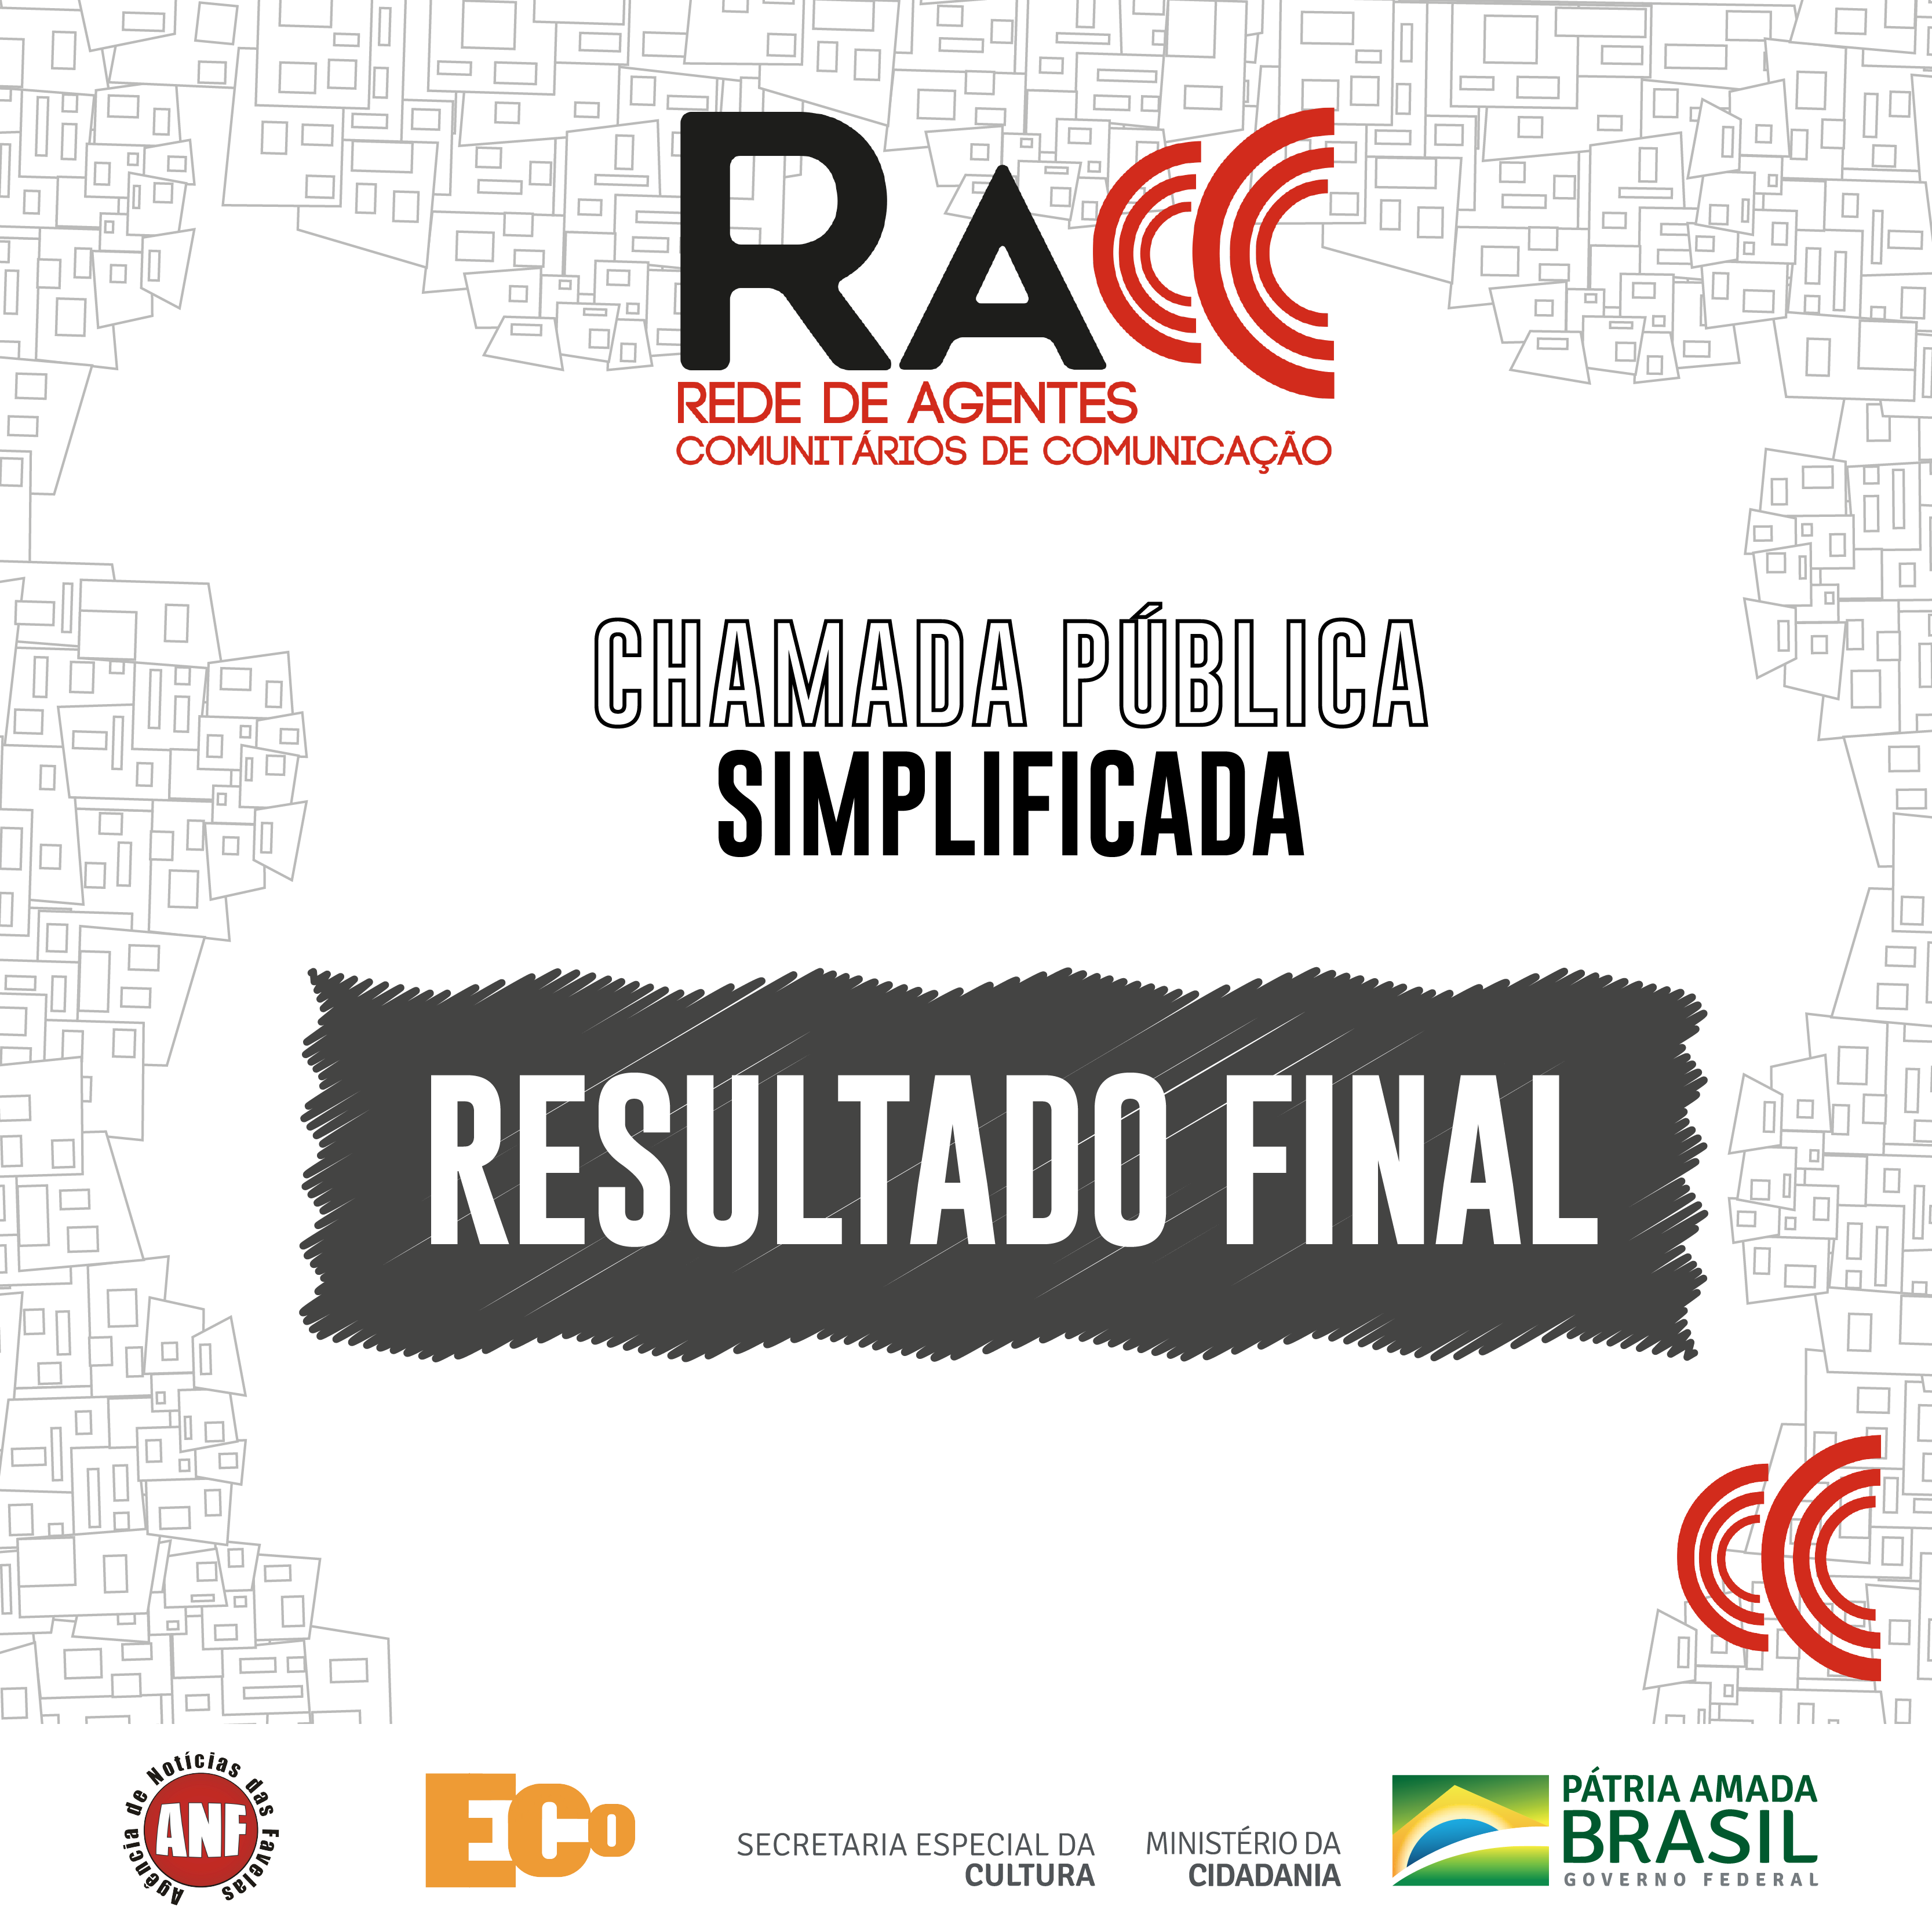 Resultado Final do Processo Seletivo para atuação na RACC no Rio de Janeiro